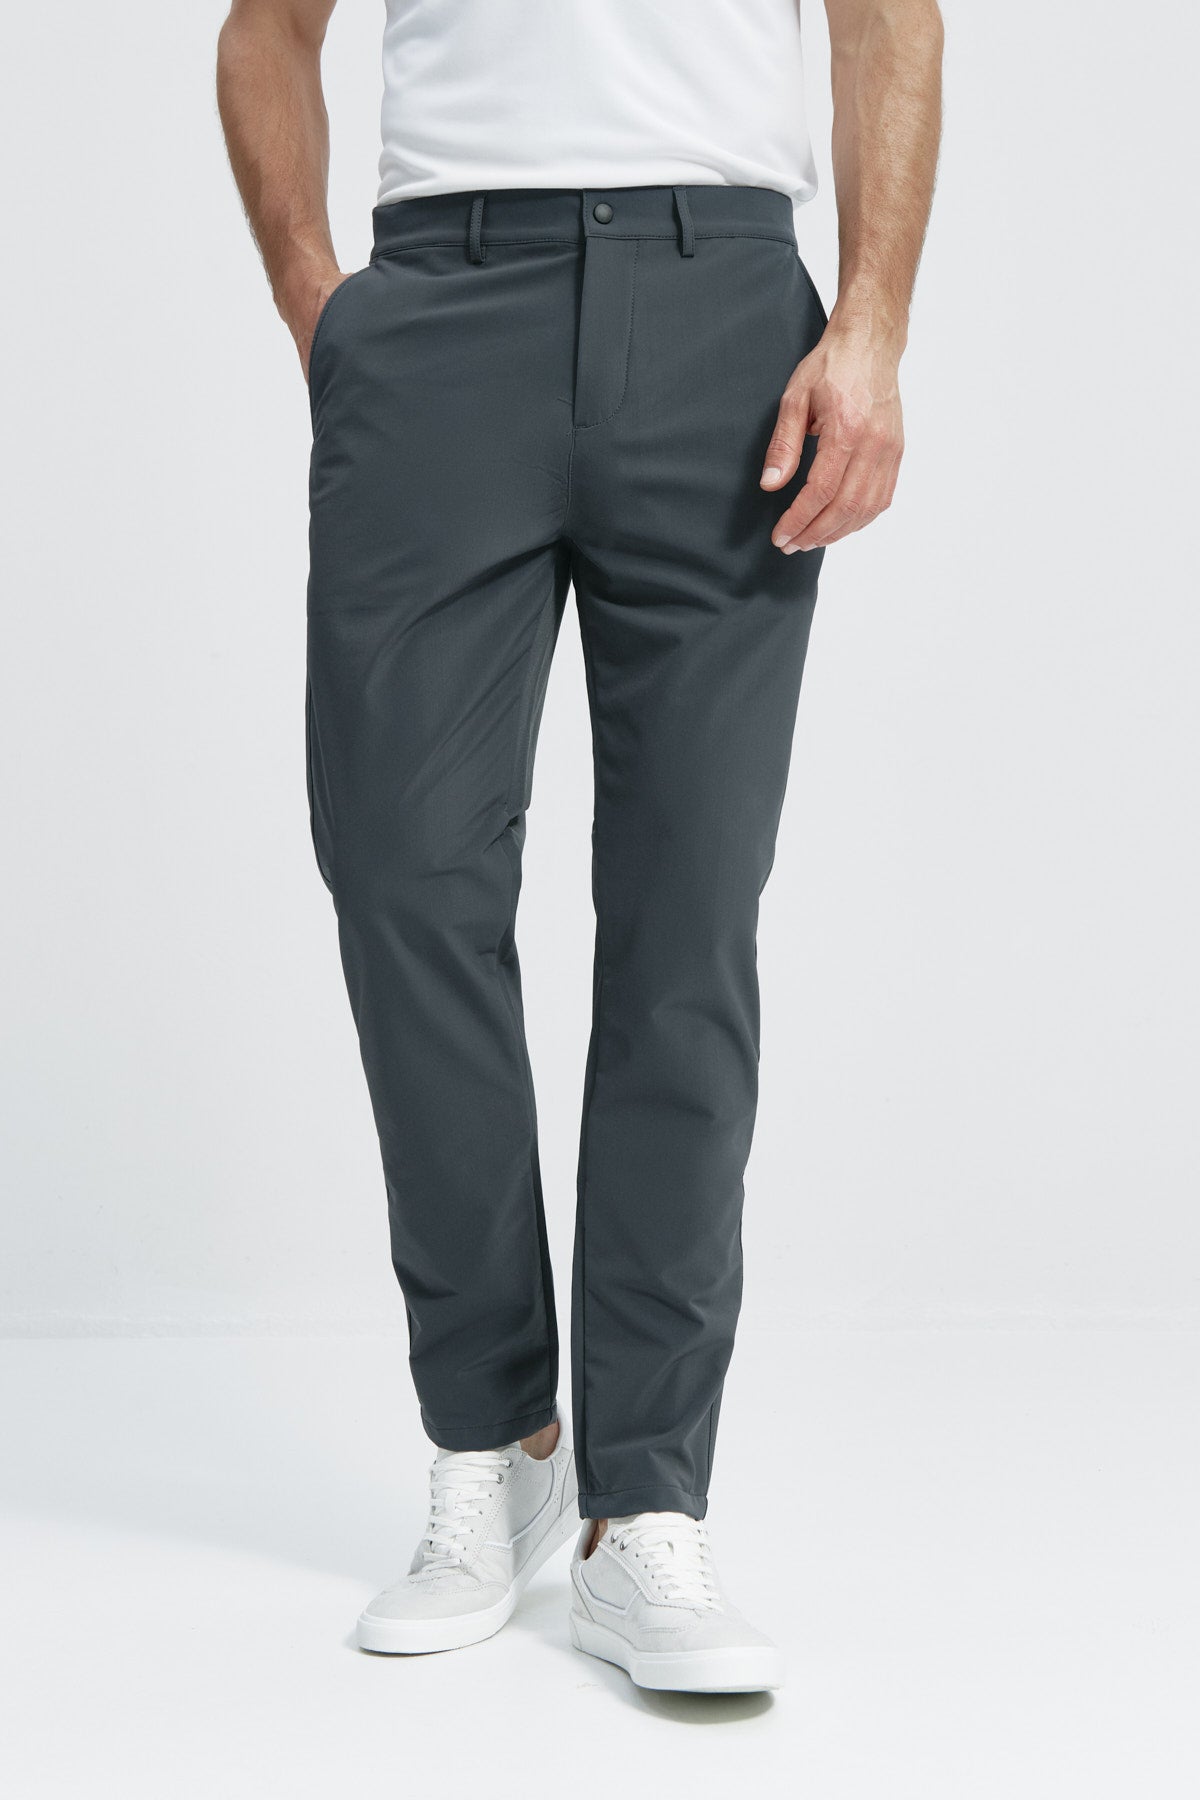 Pantalón para hombre gris: Pantalón chino regular gris para hombre con tecnología termorreguladora Coolmax. Foto de frente.